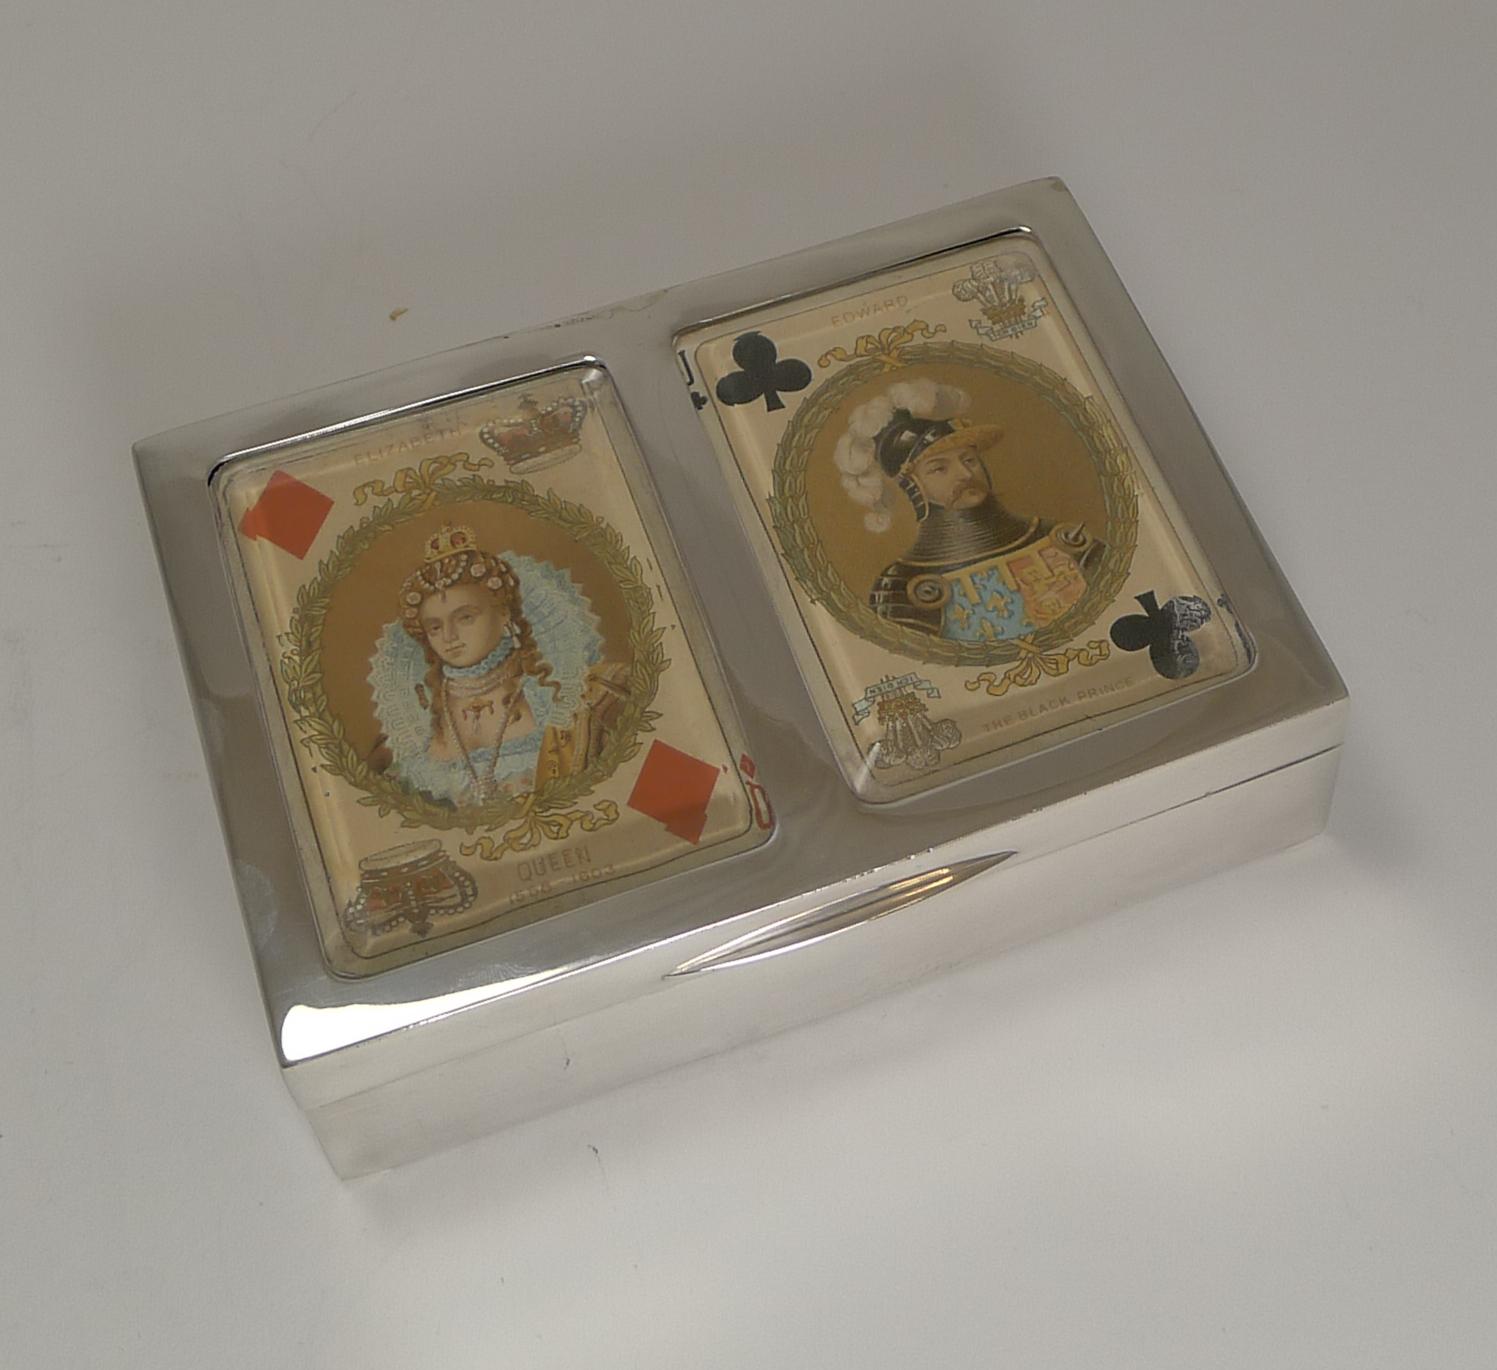 Eine großartige spätviktorianische Spielkartenbox aus englischem Sterlingsilber, vollständig gepunzt für Birmingham 1899; die Herstellermarke ist auch für den bekannten englischen Silberschmied Levi's und Salaman vorhanden.

Das Kästchen behält